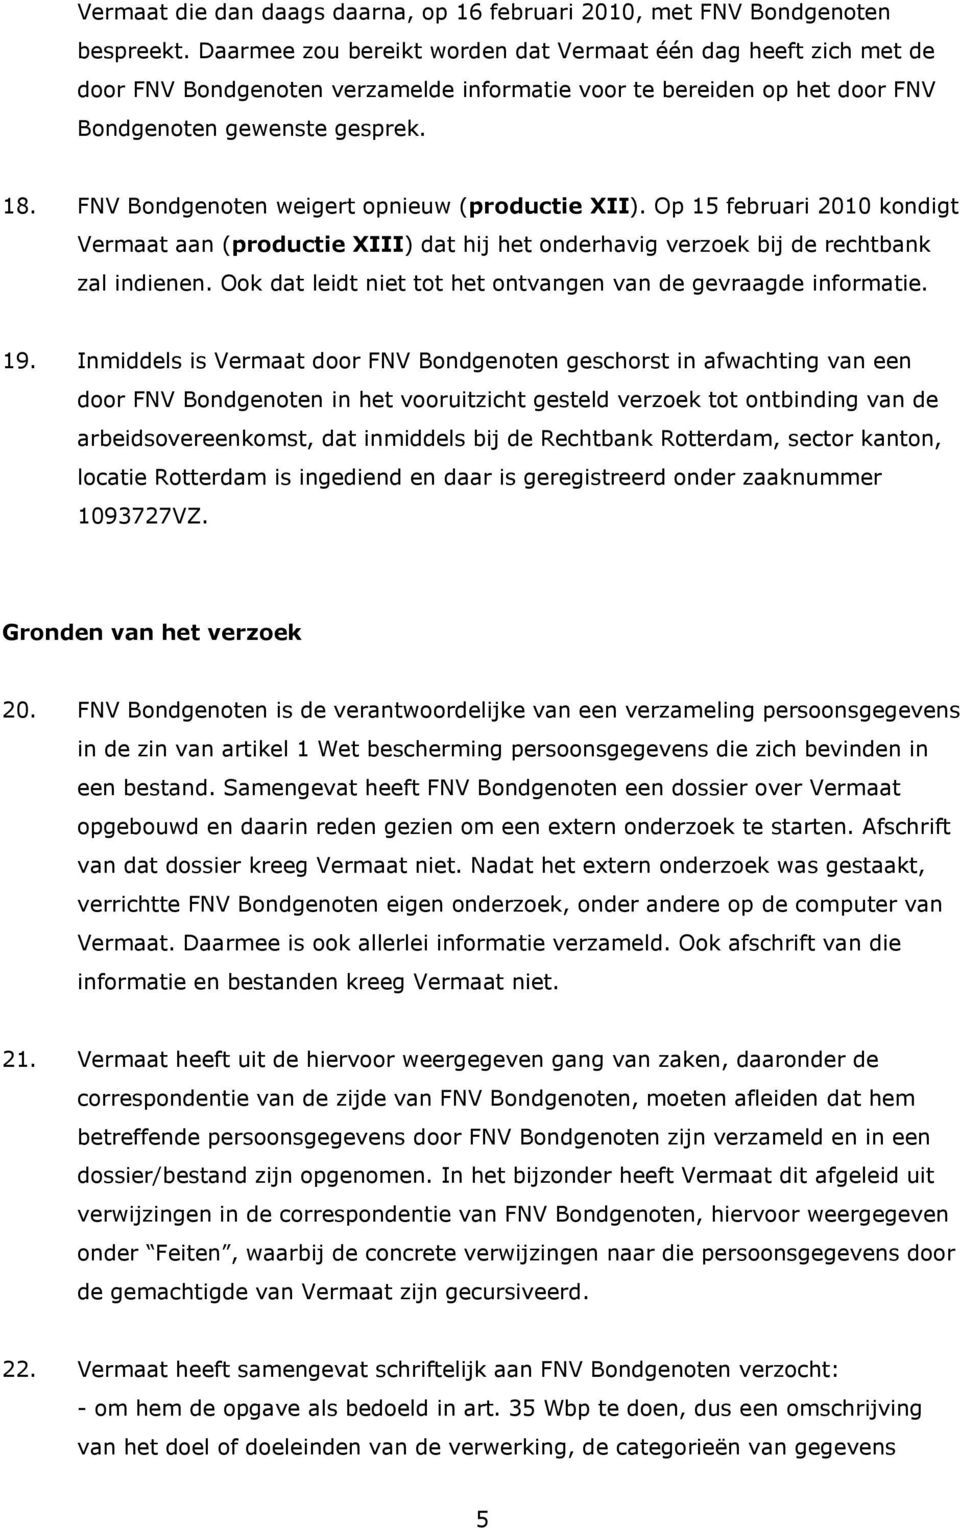 FNV Bondgenoten weigert opnieuw (productie XII). Op 15 februari 2010 kondigt Vermaat aan (productie XIII) dat hij het onderhavig verzoek bij de rechtbank zal indienen.